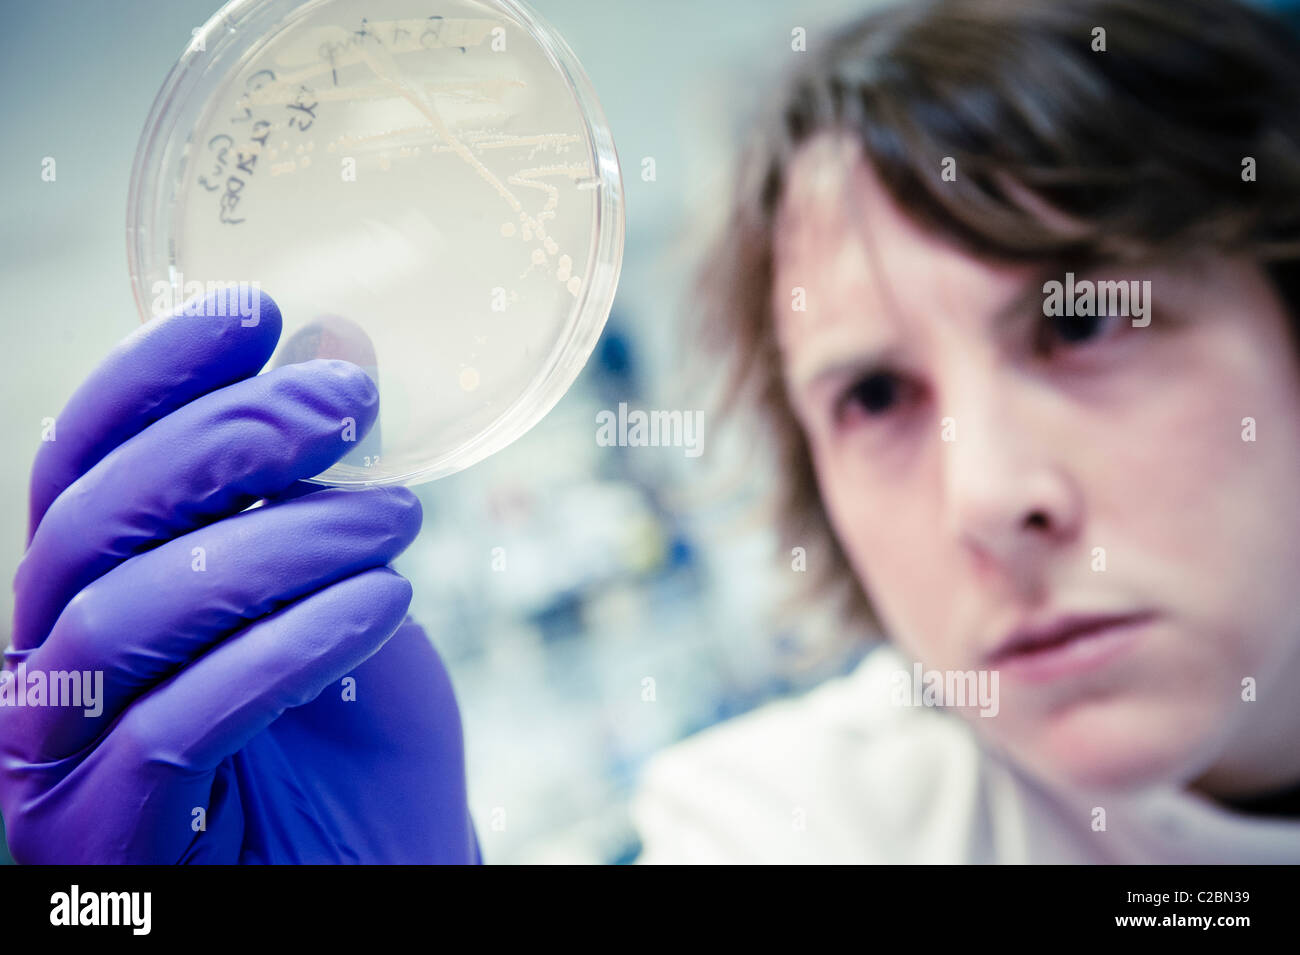 Jeune homme à la recherche scientifique en étroite collaboration à la culture cellulaire dans la boîte de pétri de porter des gants en latex violet et blanc manteau de laboratoire en science lab Banque D'Images